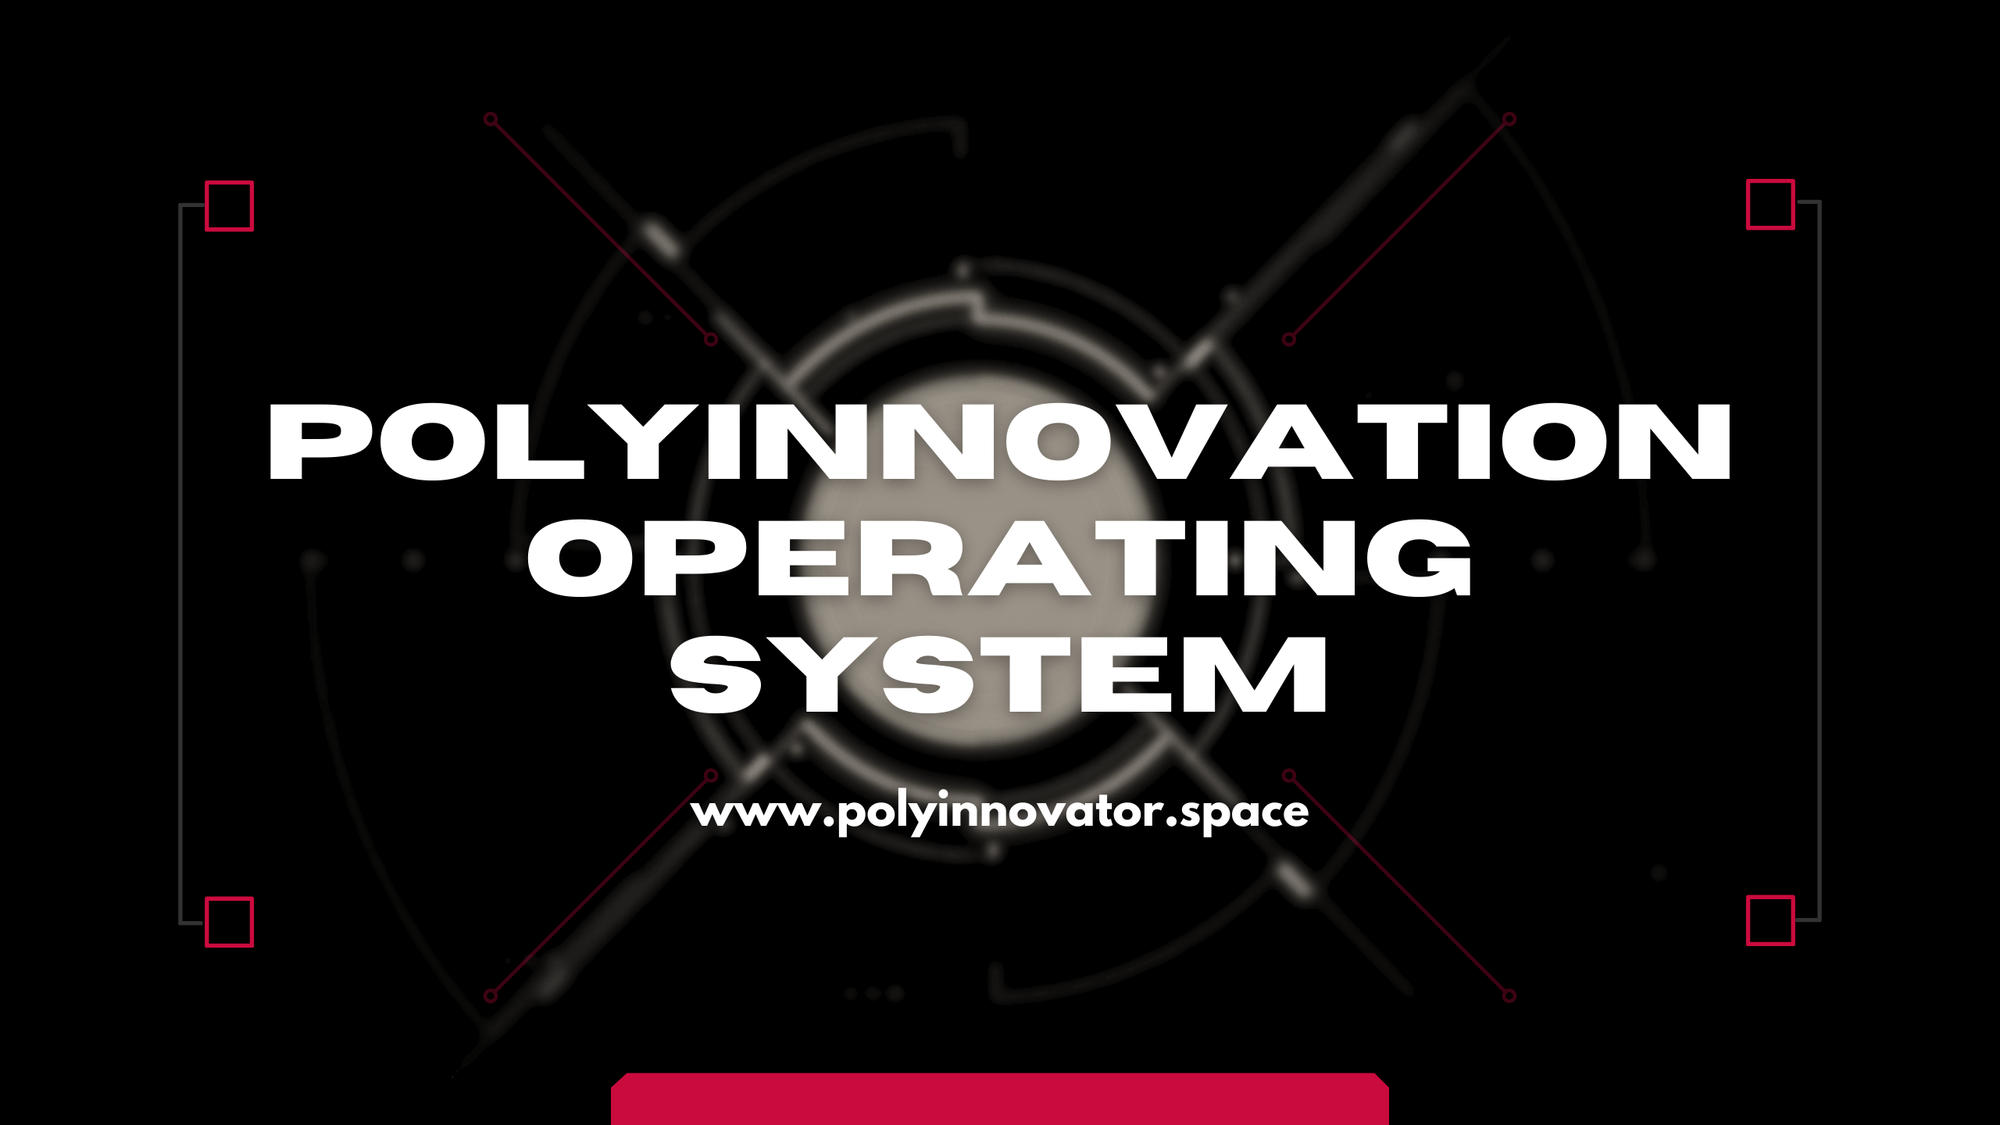 PolyInnovation Operating System